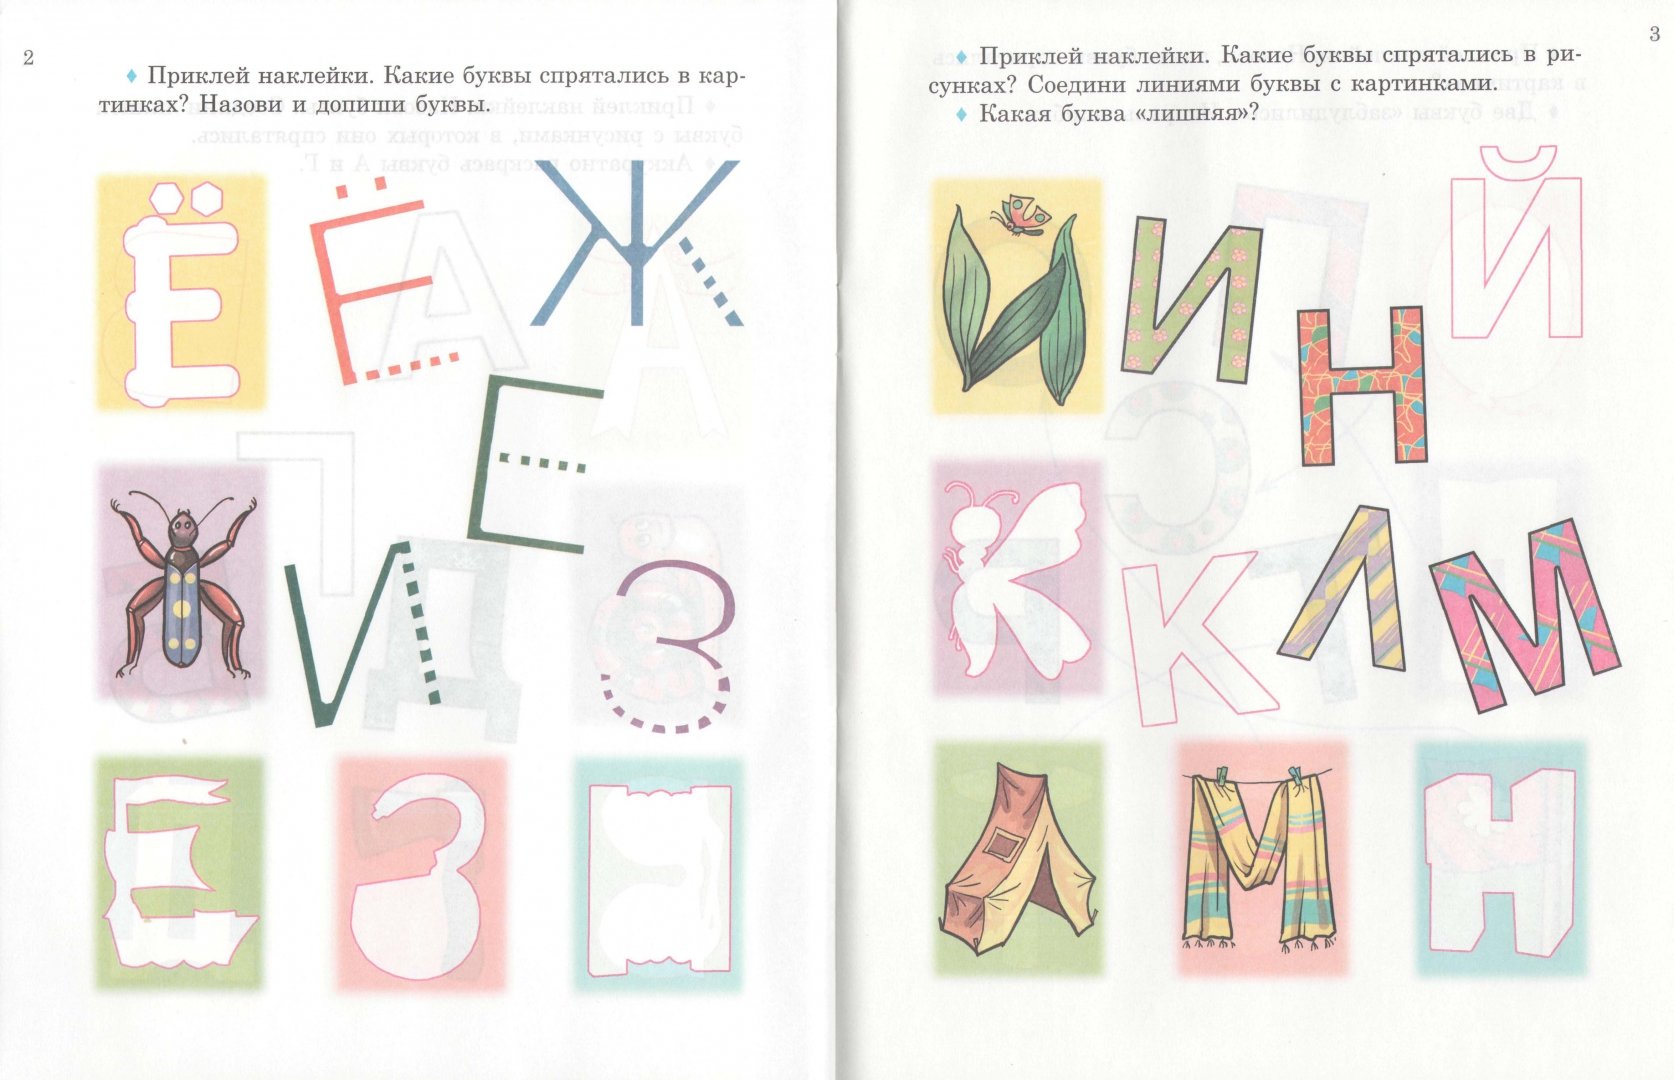 Иллюстрация 1 из 4 для Азбука в картинках с наклейками - Соколова, Толстов | Лабиринт - книги. Источник: Лабиринт